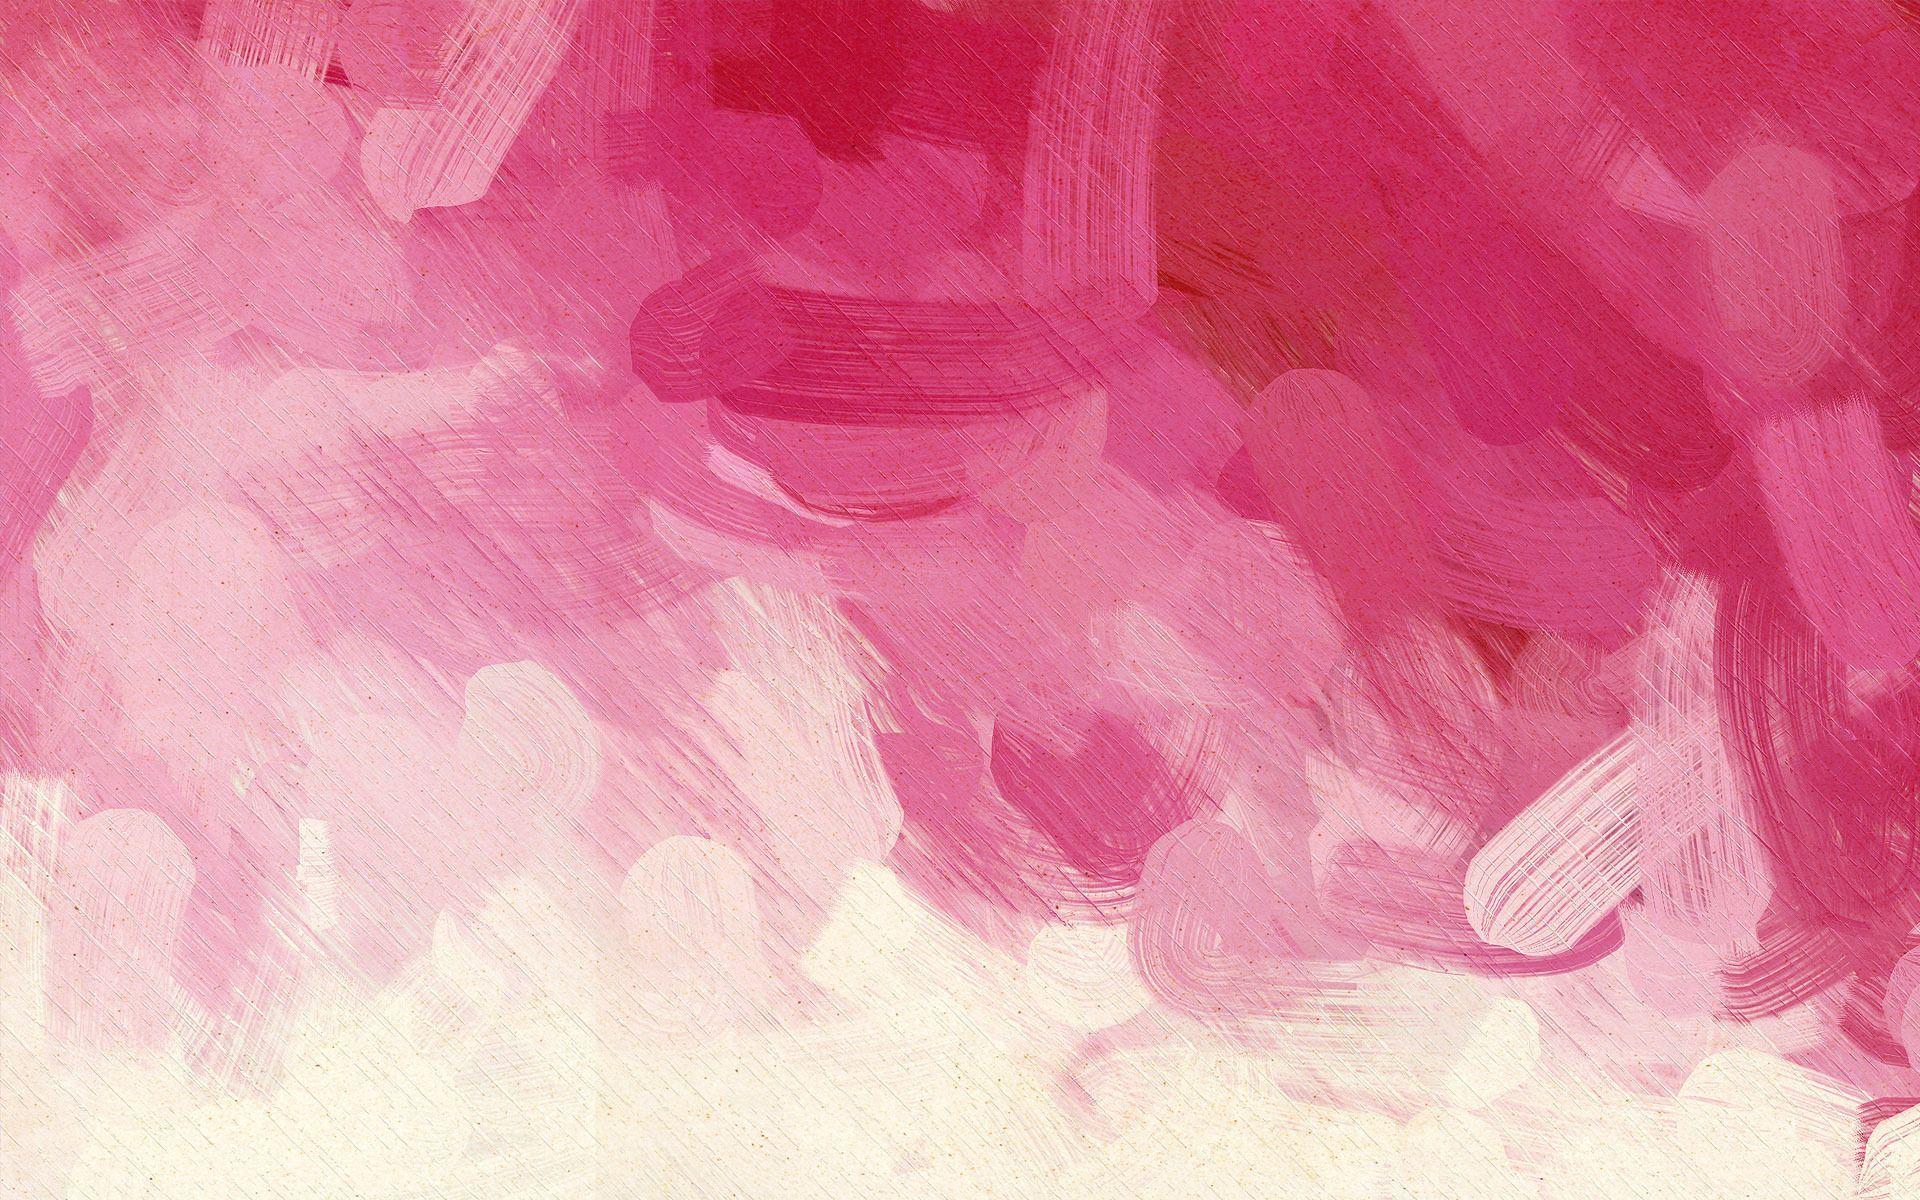 Tường giấy dán tranh và hình nền giấy dán tranh màu hồng sẽ mang đến cho bạn một không gian nữ tính và đáng yêu. Cảm nhận vẻ đẹp sống động của những hình ảnh được tô thêm nét màu hồng tươi tắn và nhẹ nhàng.